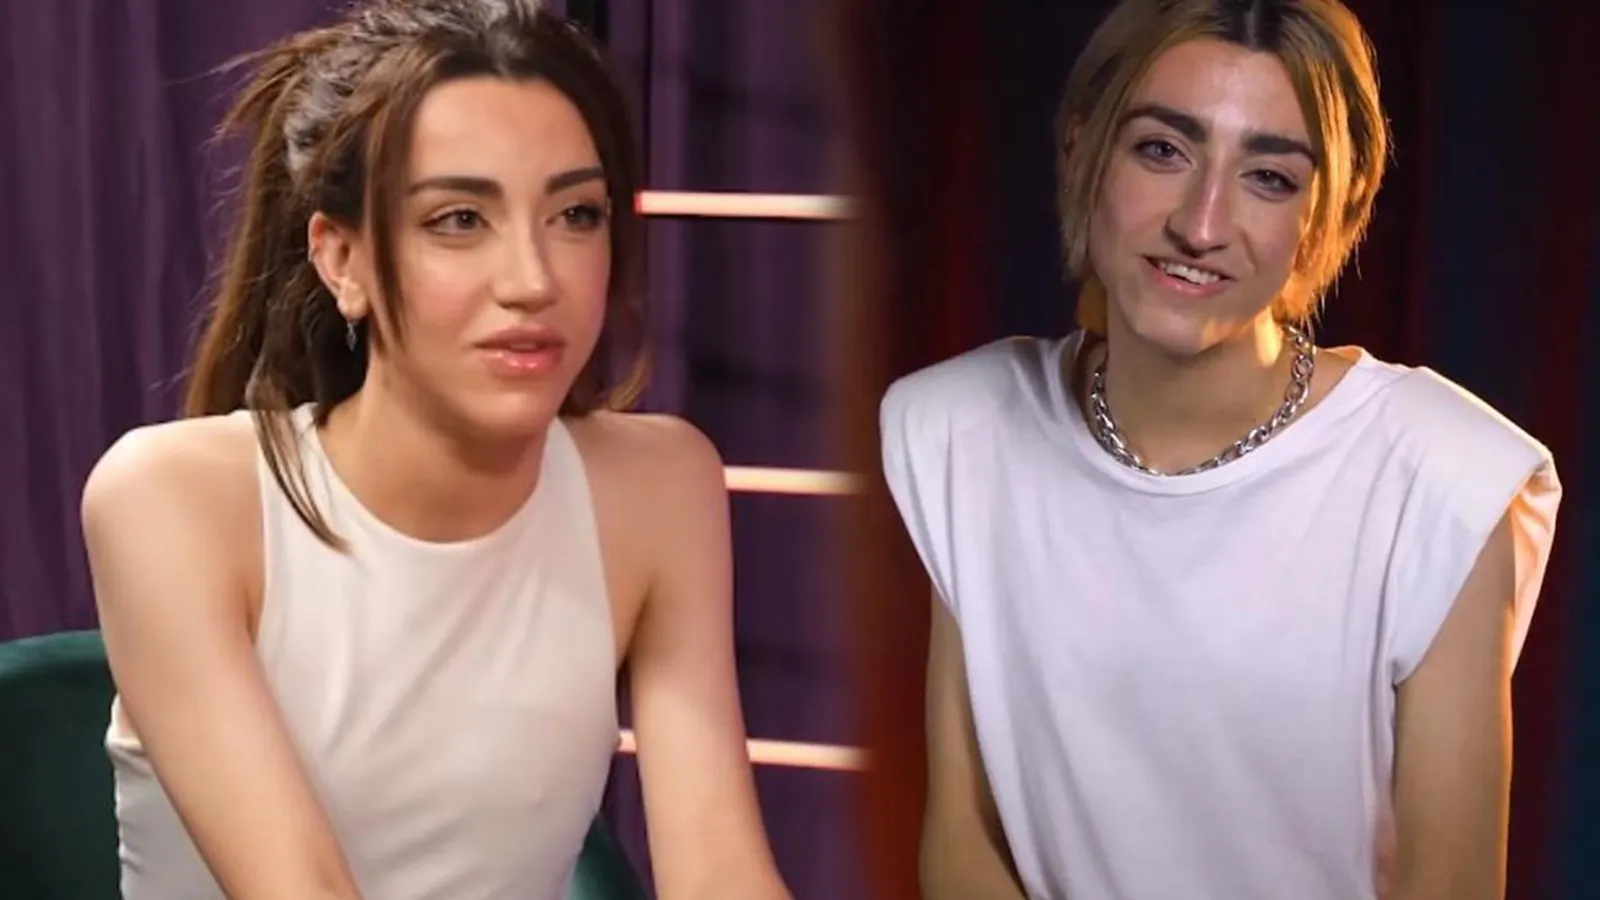 Cinsiyet Değiştiren Mika Raun Türbeye Gitti!: "Kandiliniz Mübarek Olsun Aşkom"